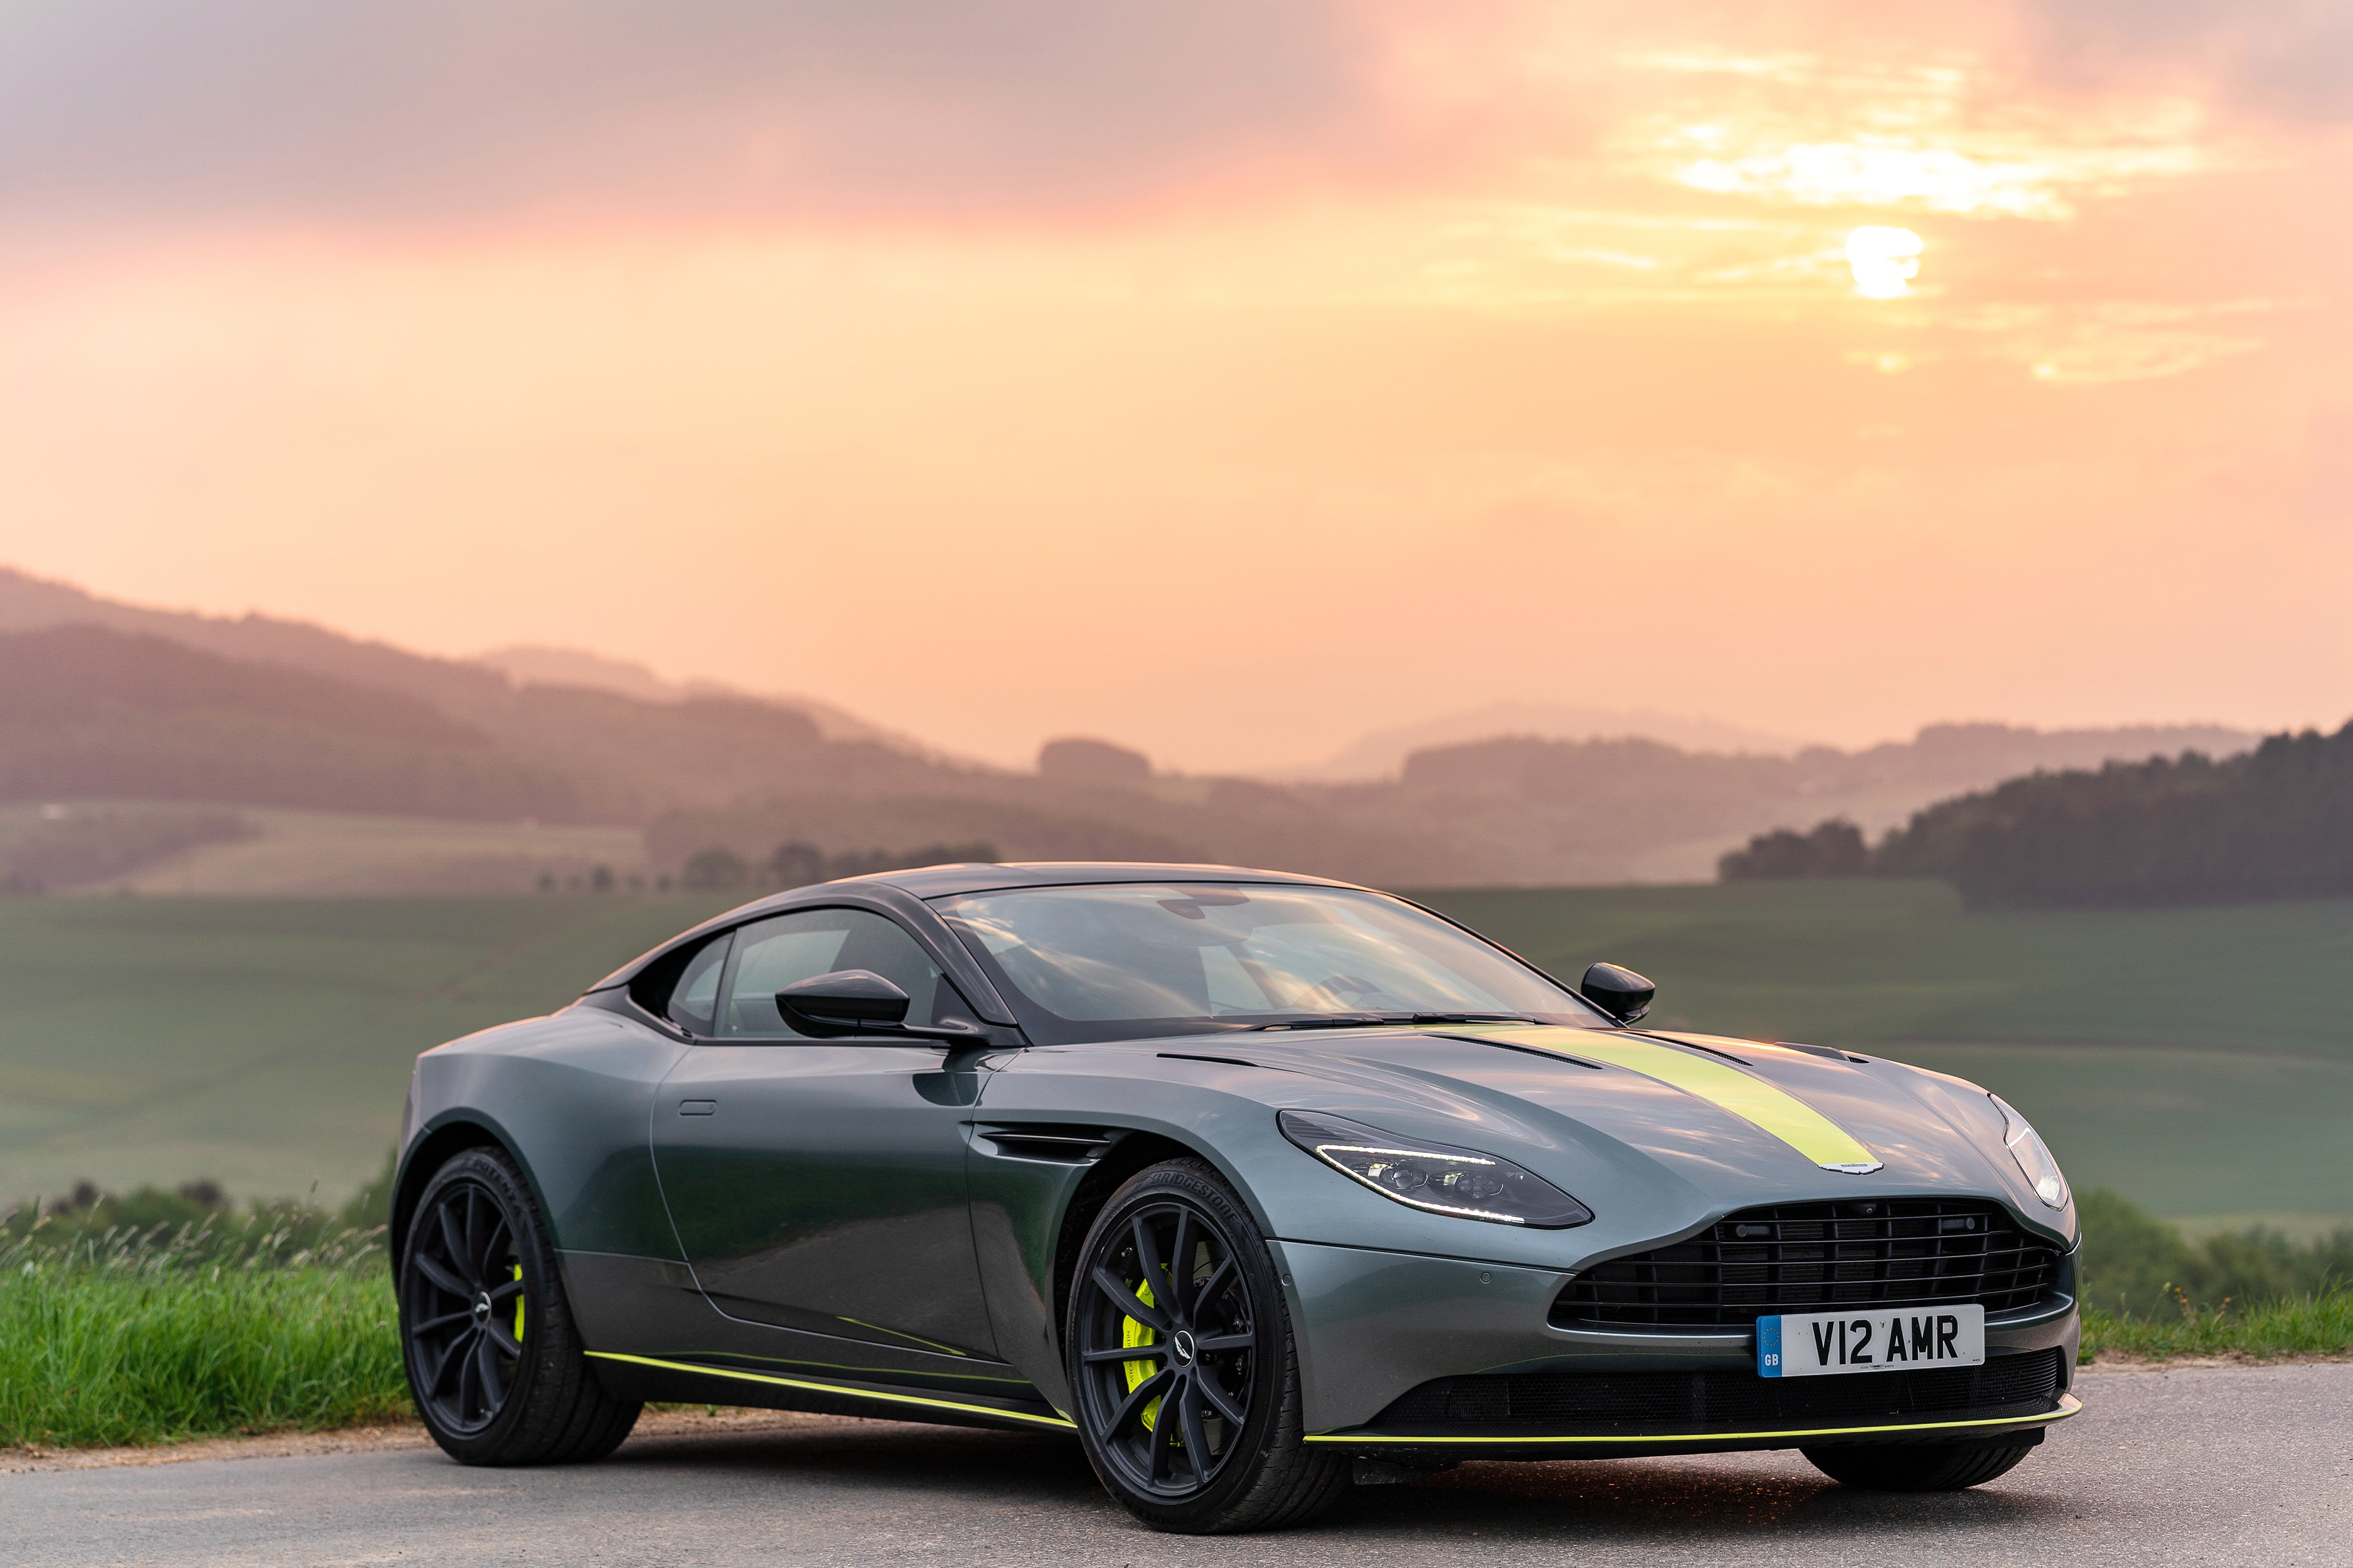 Скачать обои Aston Martin Db11 Amr Signature Edition на телефон бесплатно